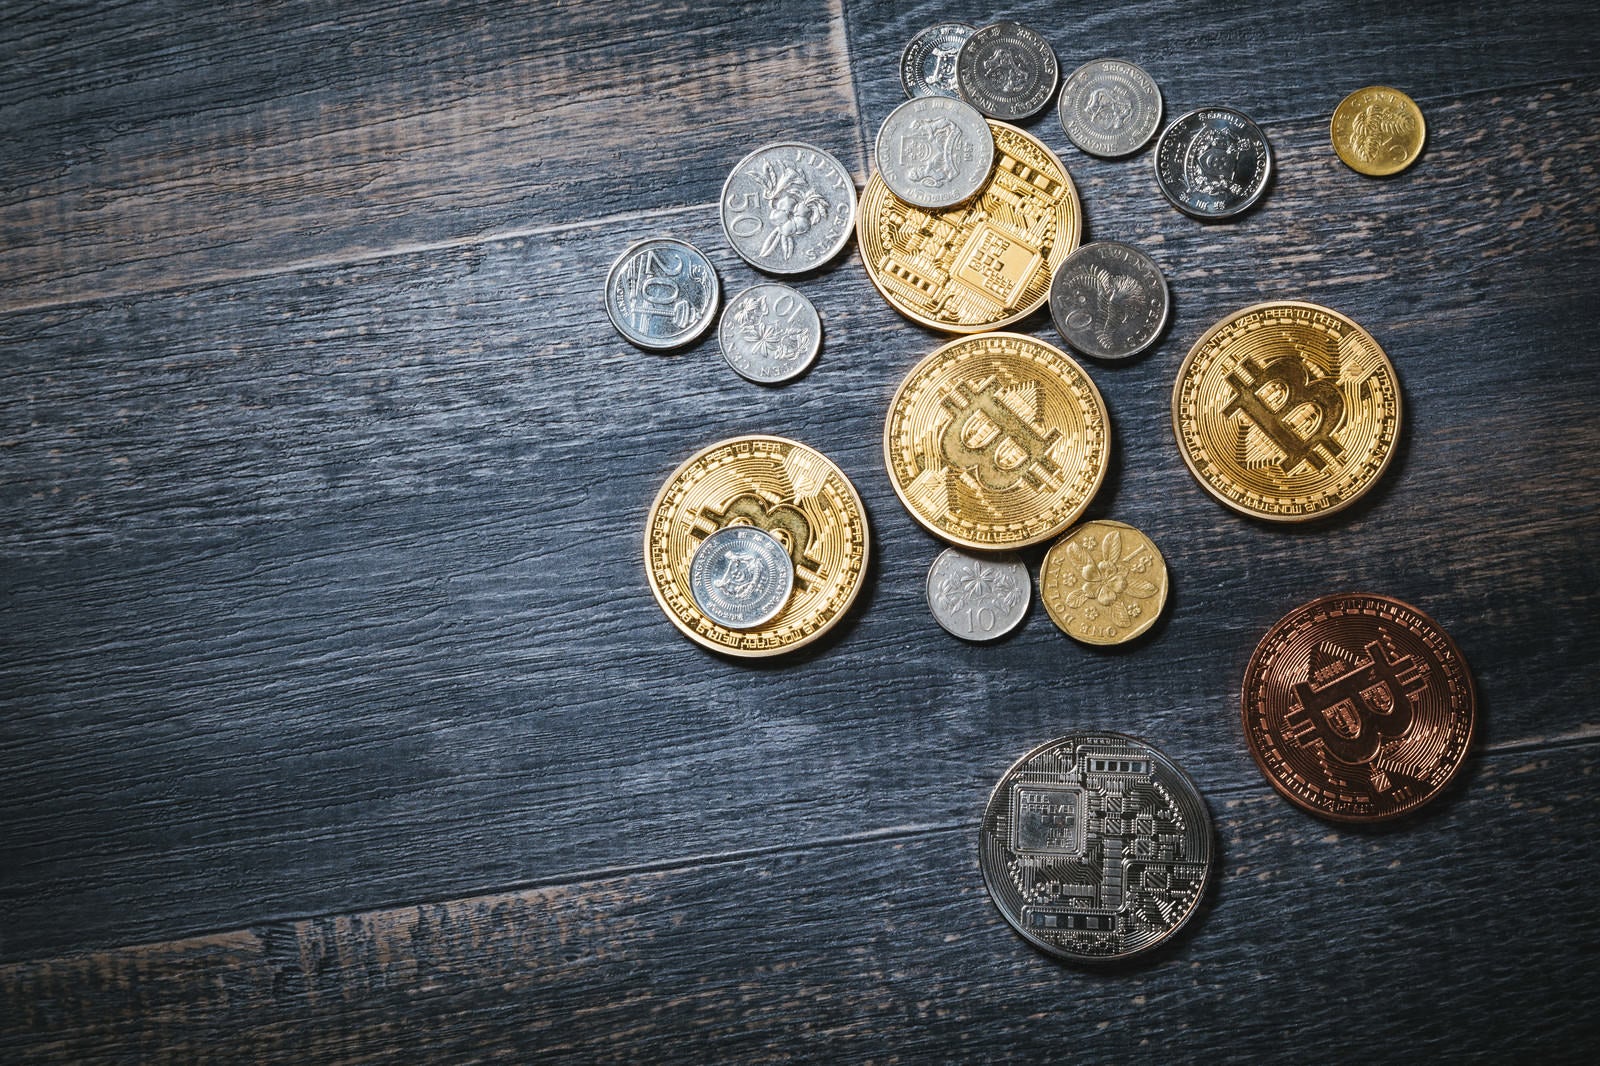 「散らばったビットコインと貨幣」の写真